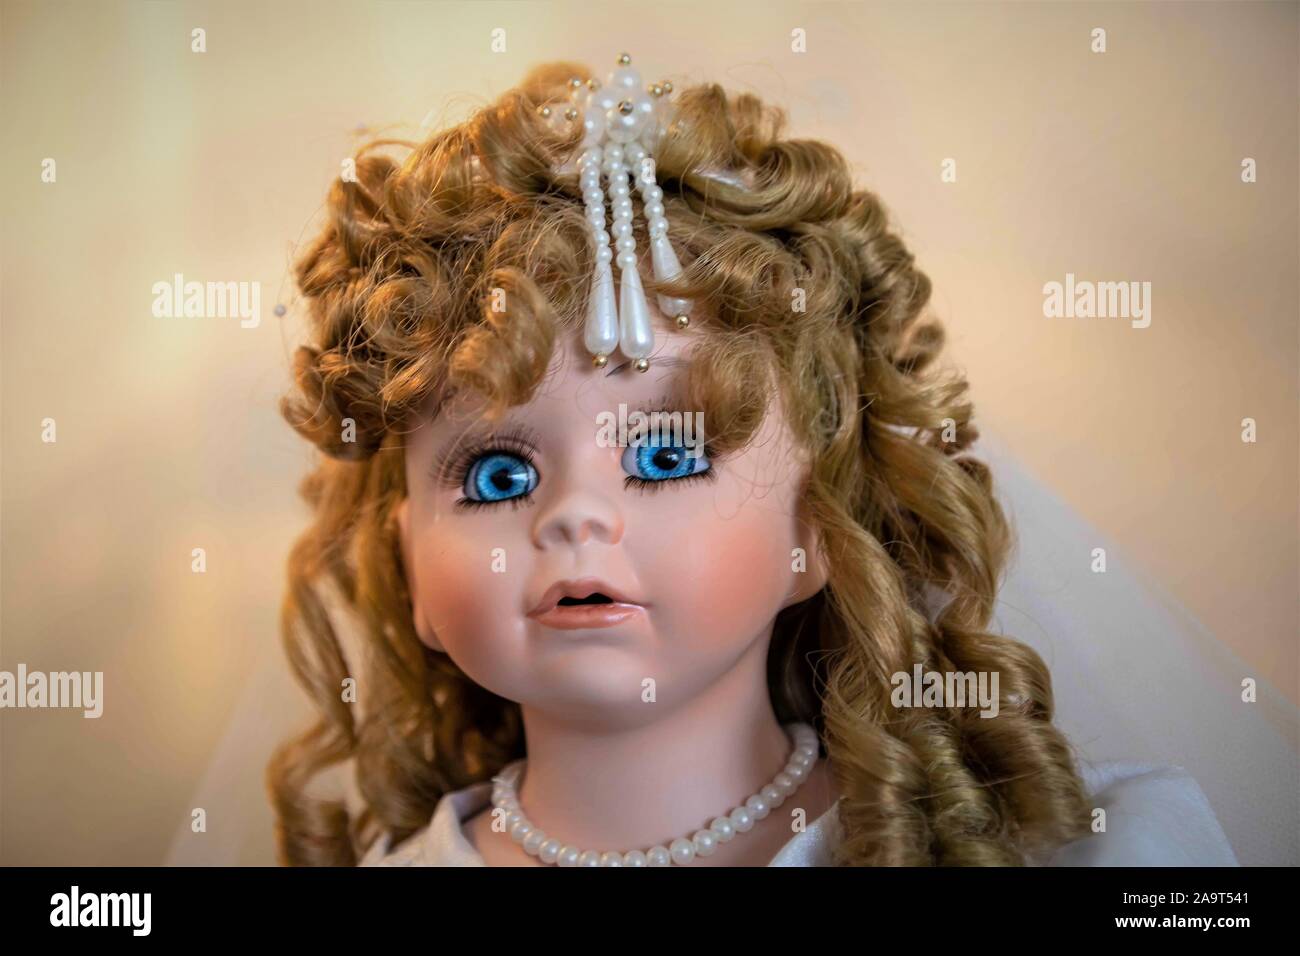 Puppen aus Sammlungen für Erwachsene, die eine Puppe als Kind geliebt und  konnte nun Qualität Baby und erwachsenen Figuren, die sind teuer  Bedienelemente kaufen Stockfotografie - Alamy